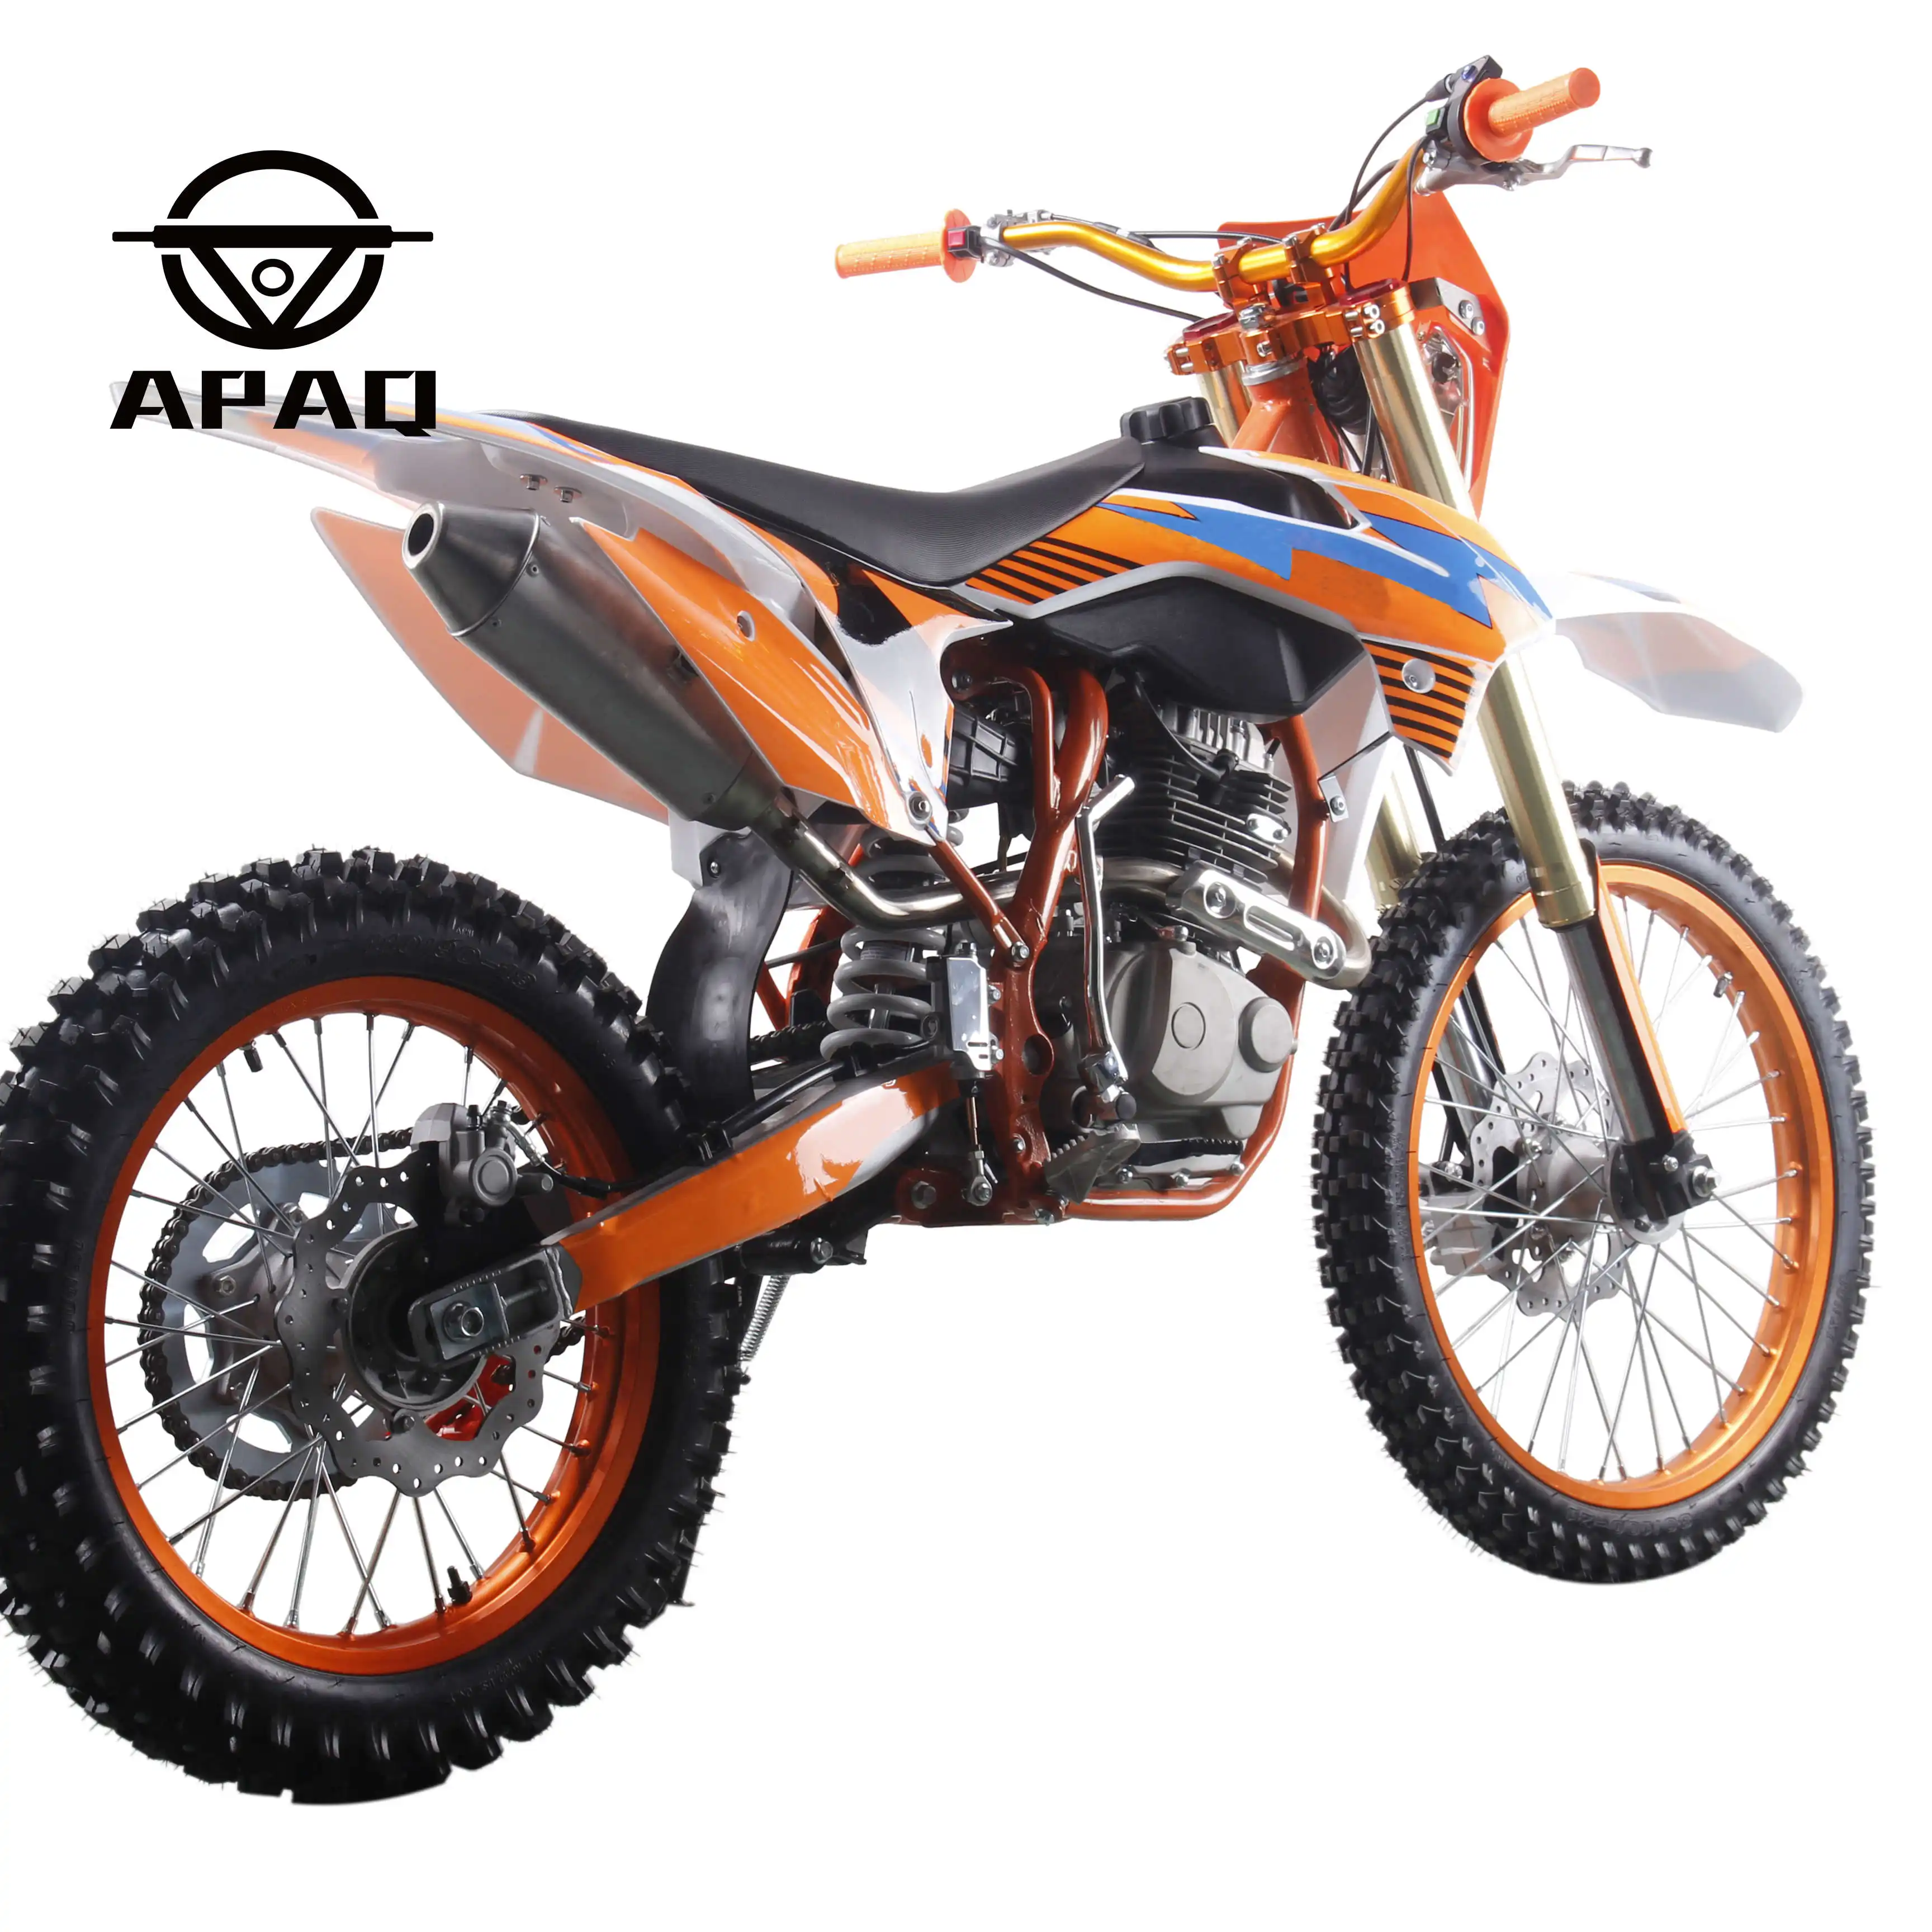 Мотоцикл APAQ 300cc, внедорожный и внедорожный газовый скутер на продажу